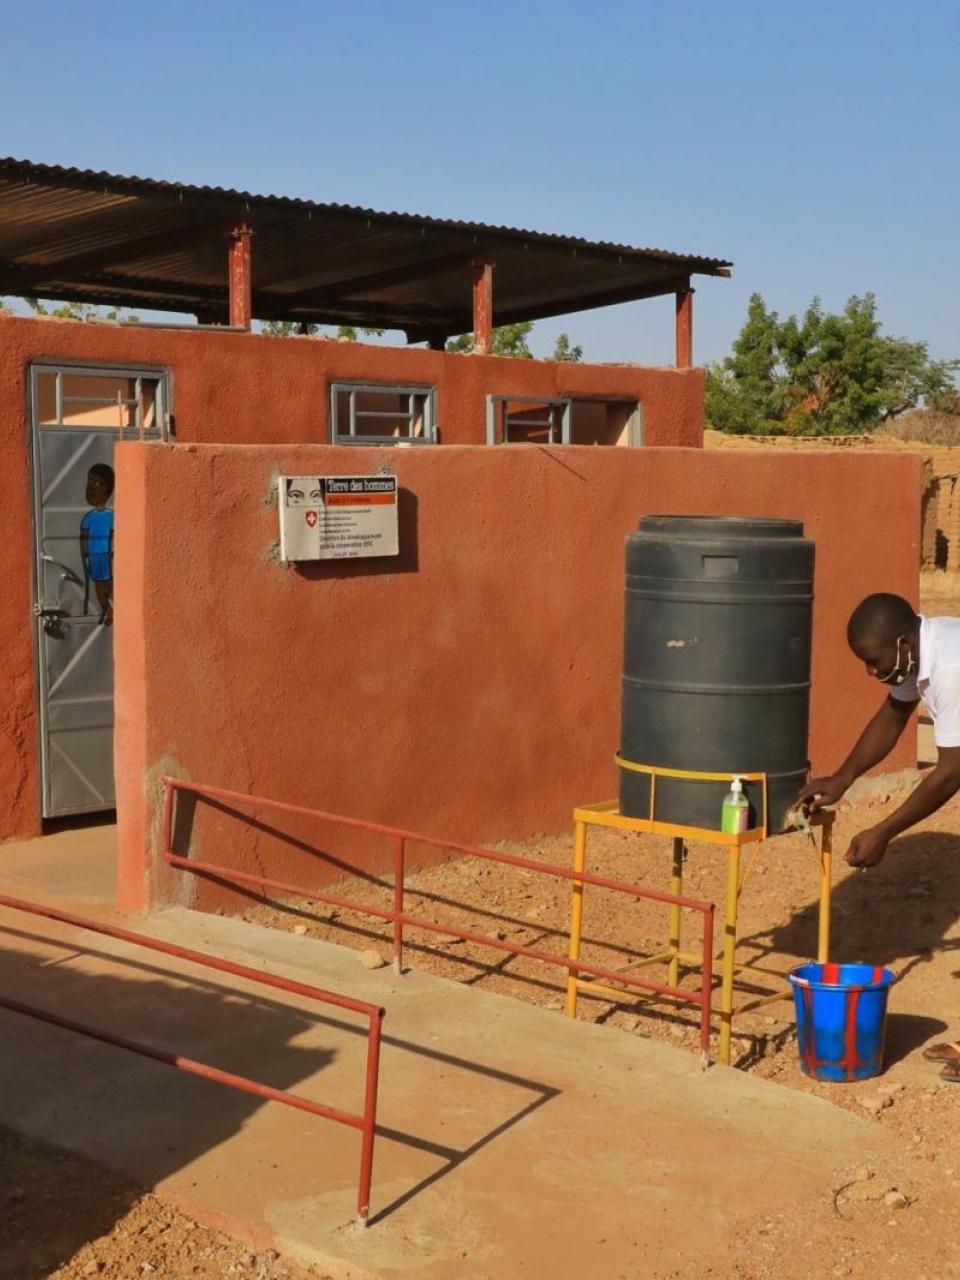 El consorcio suizo para el agua y el saneamiento se esfuerza por proporcionar infraestructuras de saneamiento dignas y adaptadas a la movilidad de todos en Malí © Terre des hommes